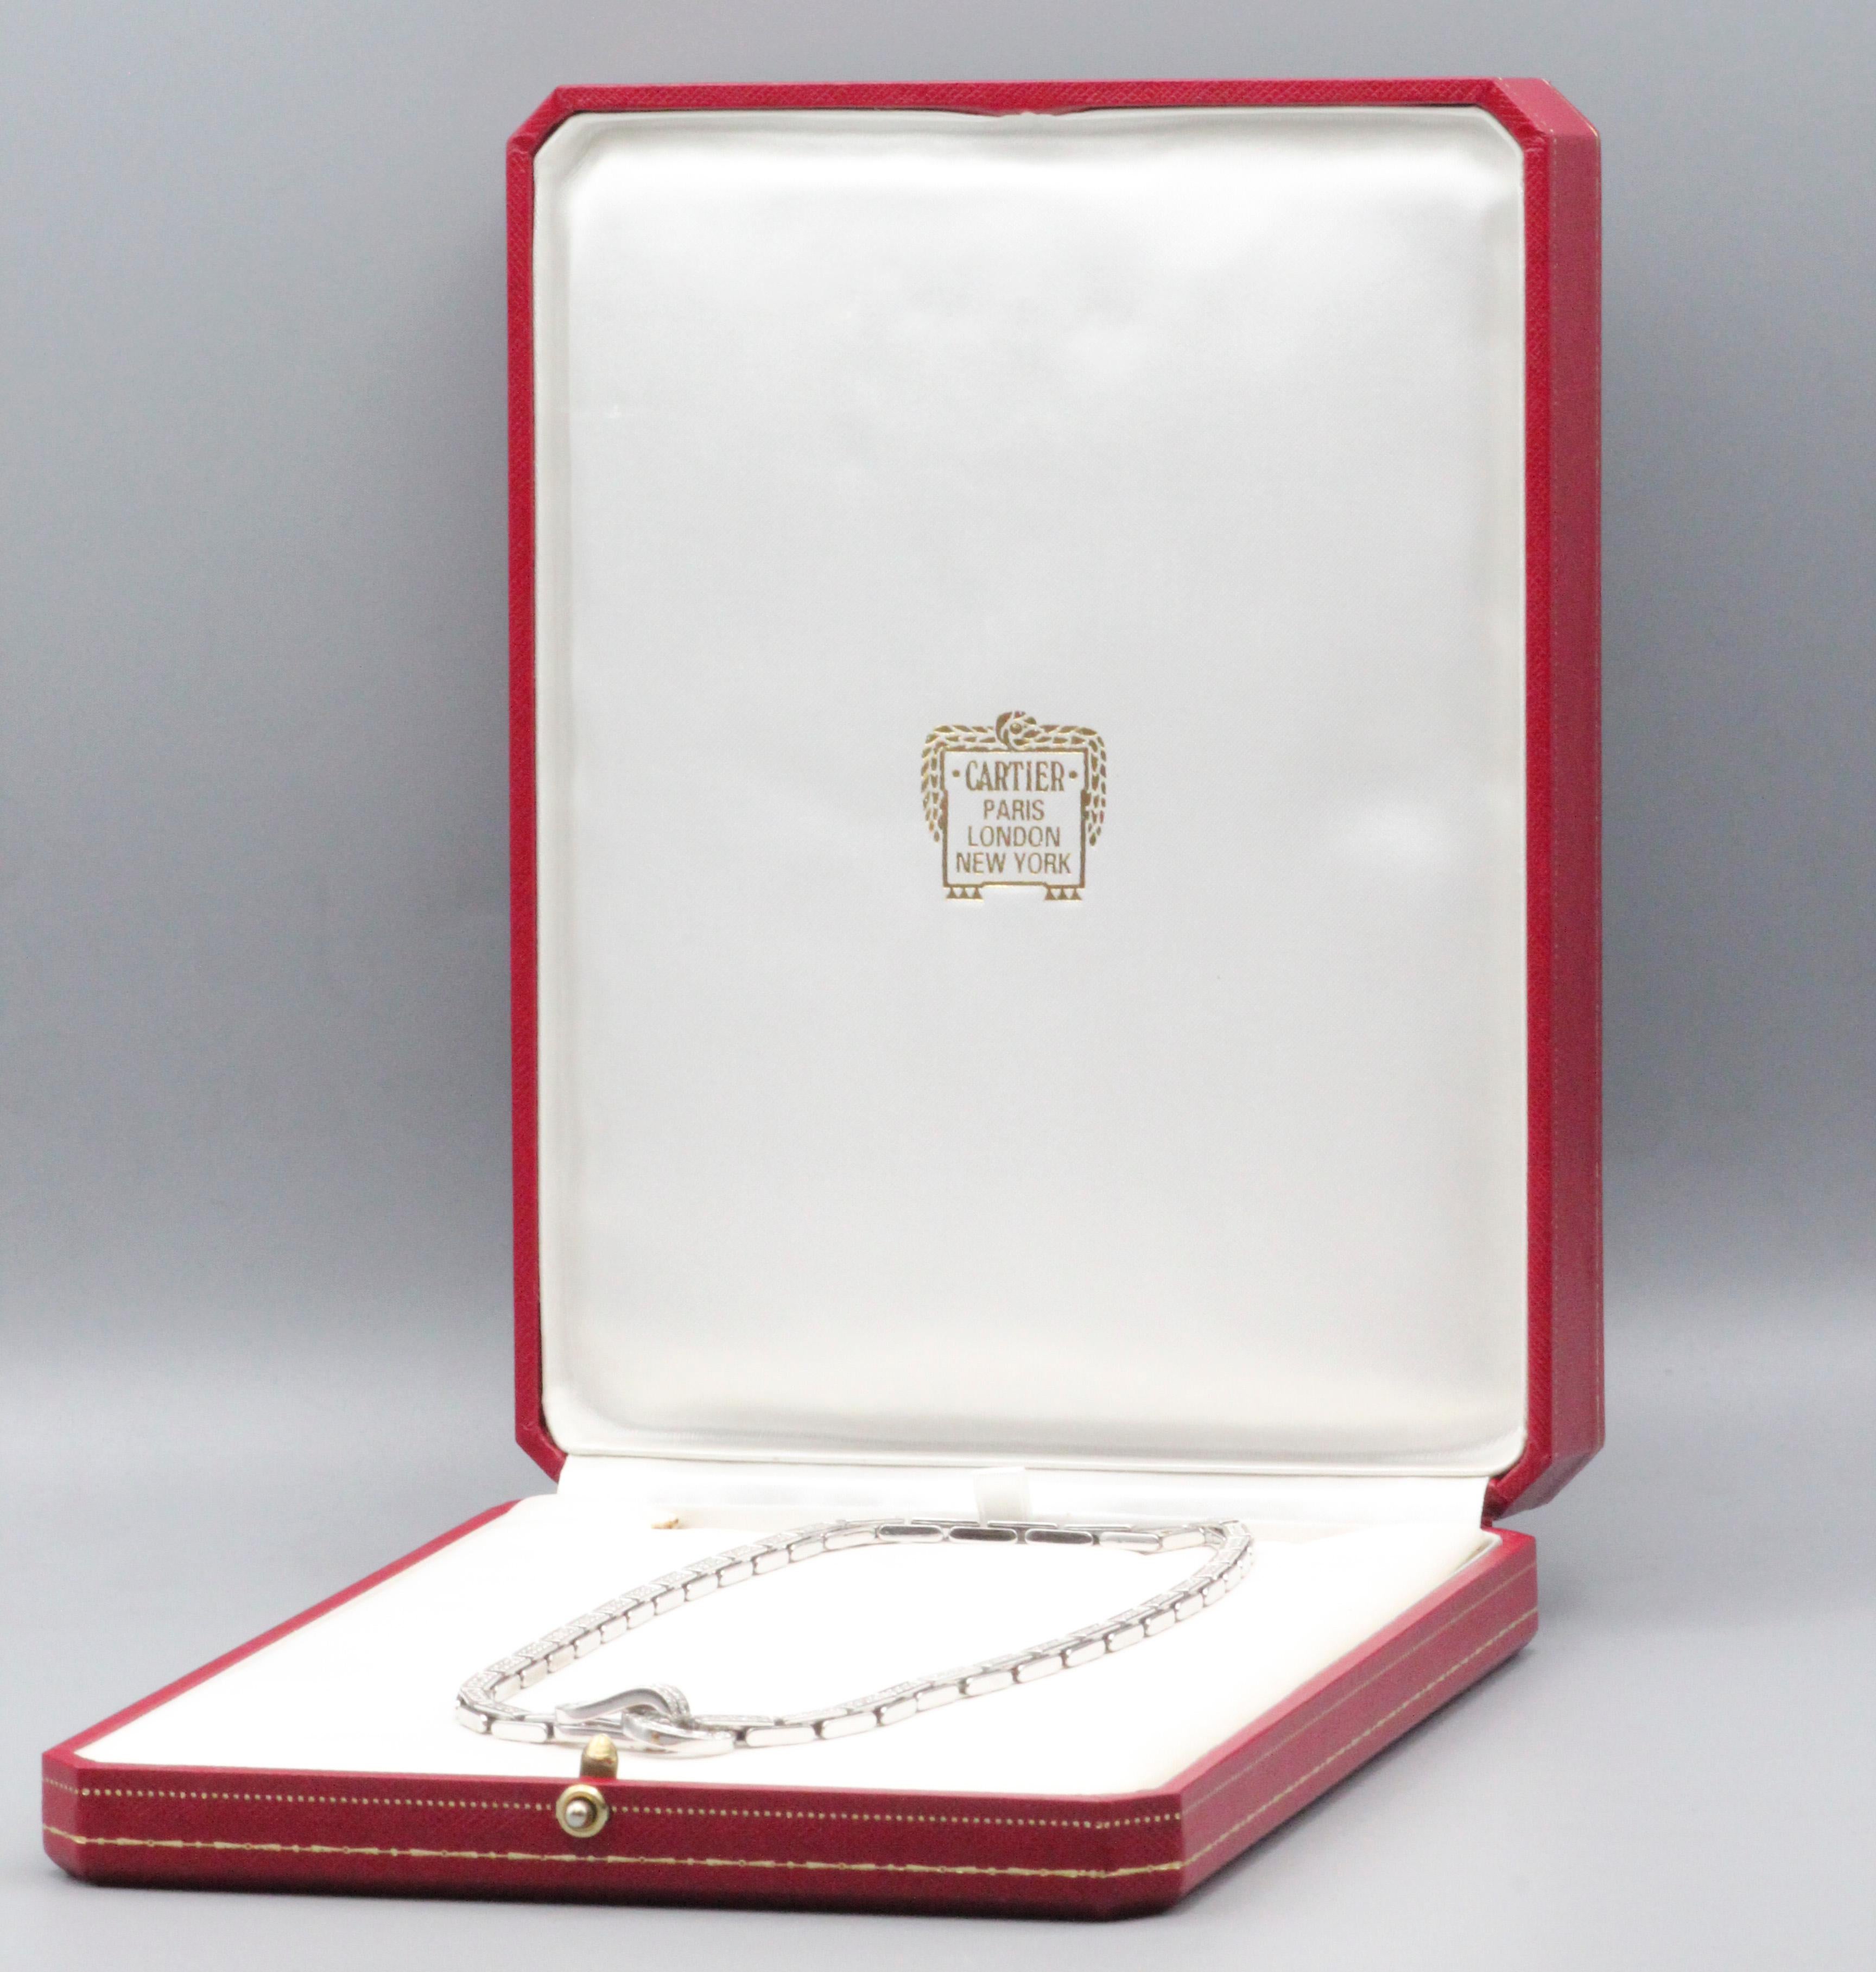 Gönnen Sie sich den Gipfel des Luxus und der Raffinesse mit der Cartier Agrafe  Diamant-Halskette aus 18 Karat Weißgold - ein strahlendes Meisterwerk, das die Hingabe von Cartier für zeitlose Eleganz und tadellose Handwerkskunst verdeutlicht. Dieses